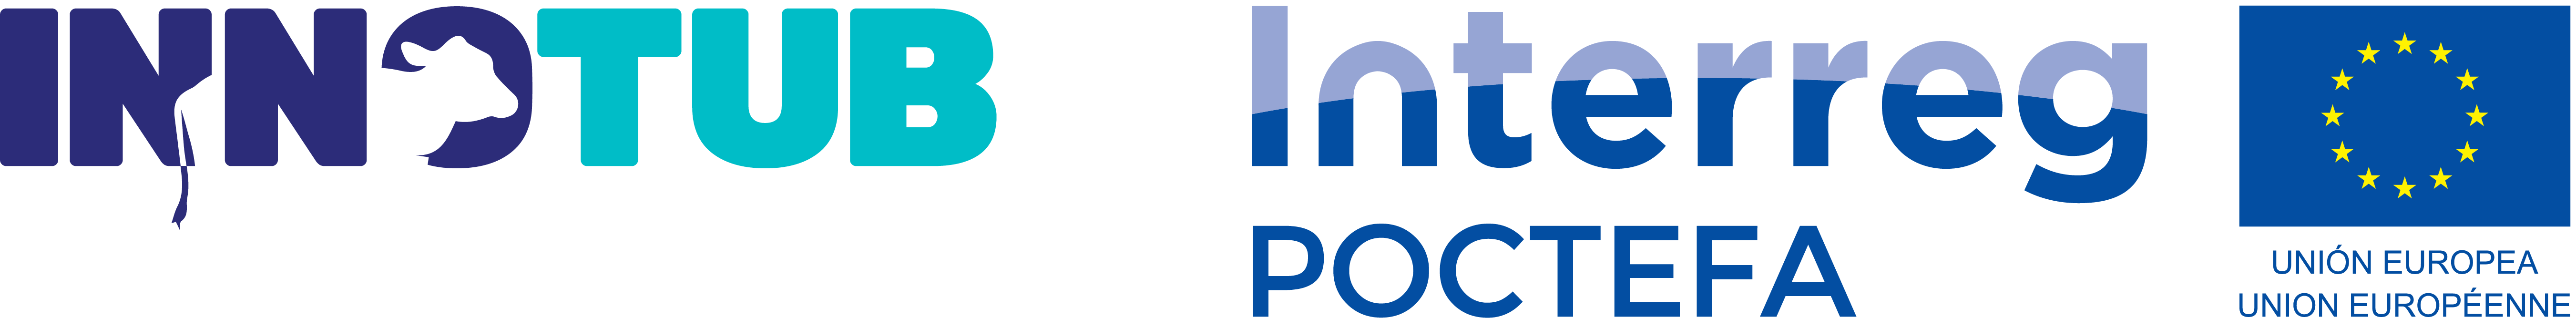 Logo projet Innotub